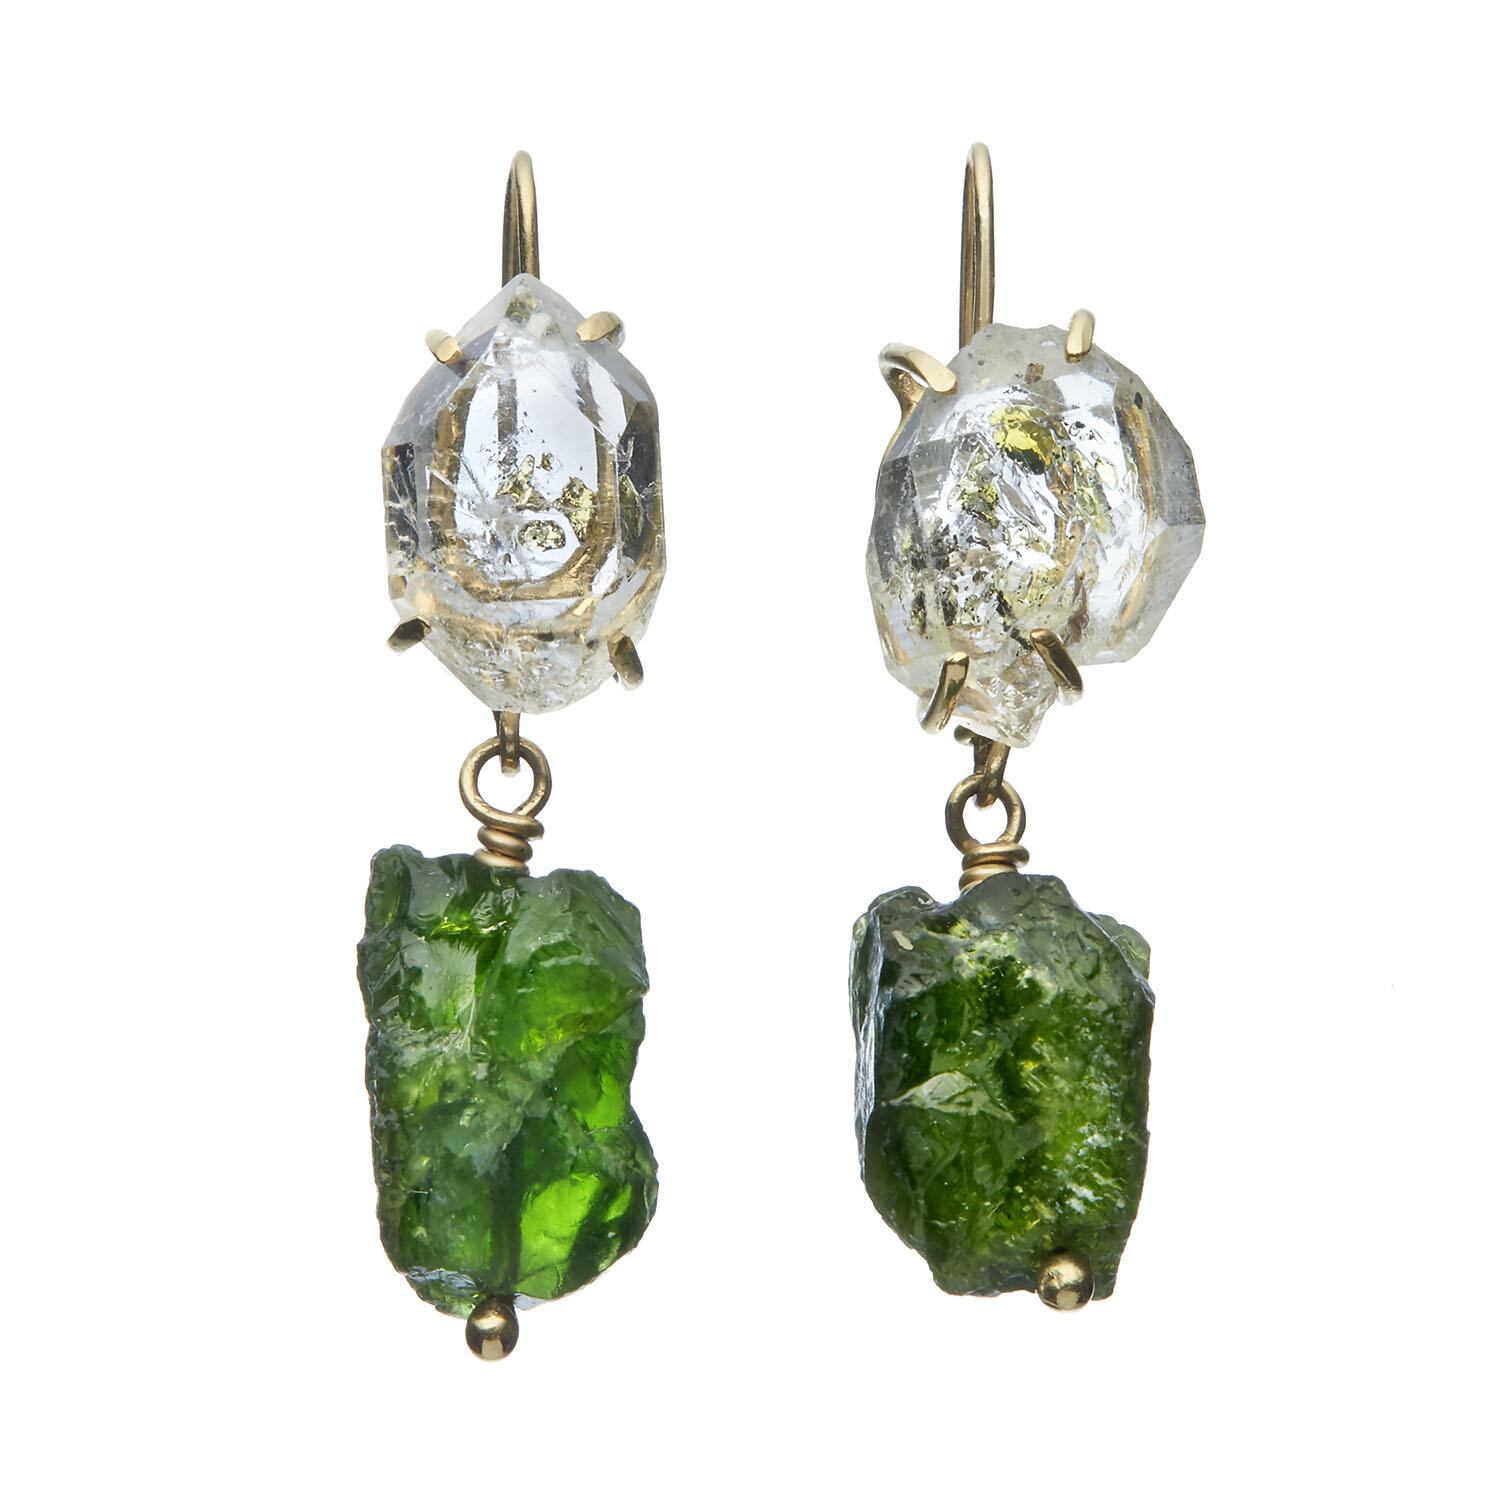 Kiaeria earrings